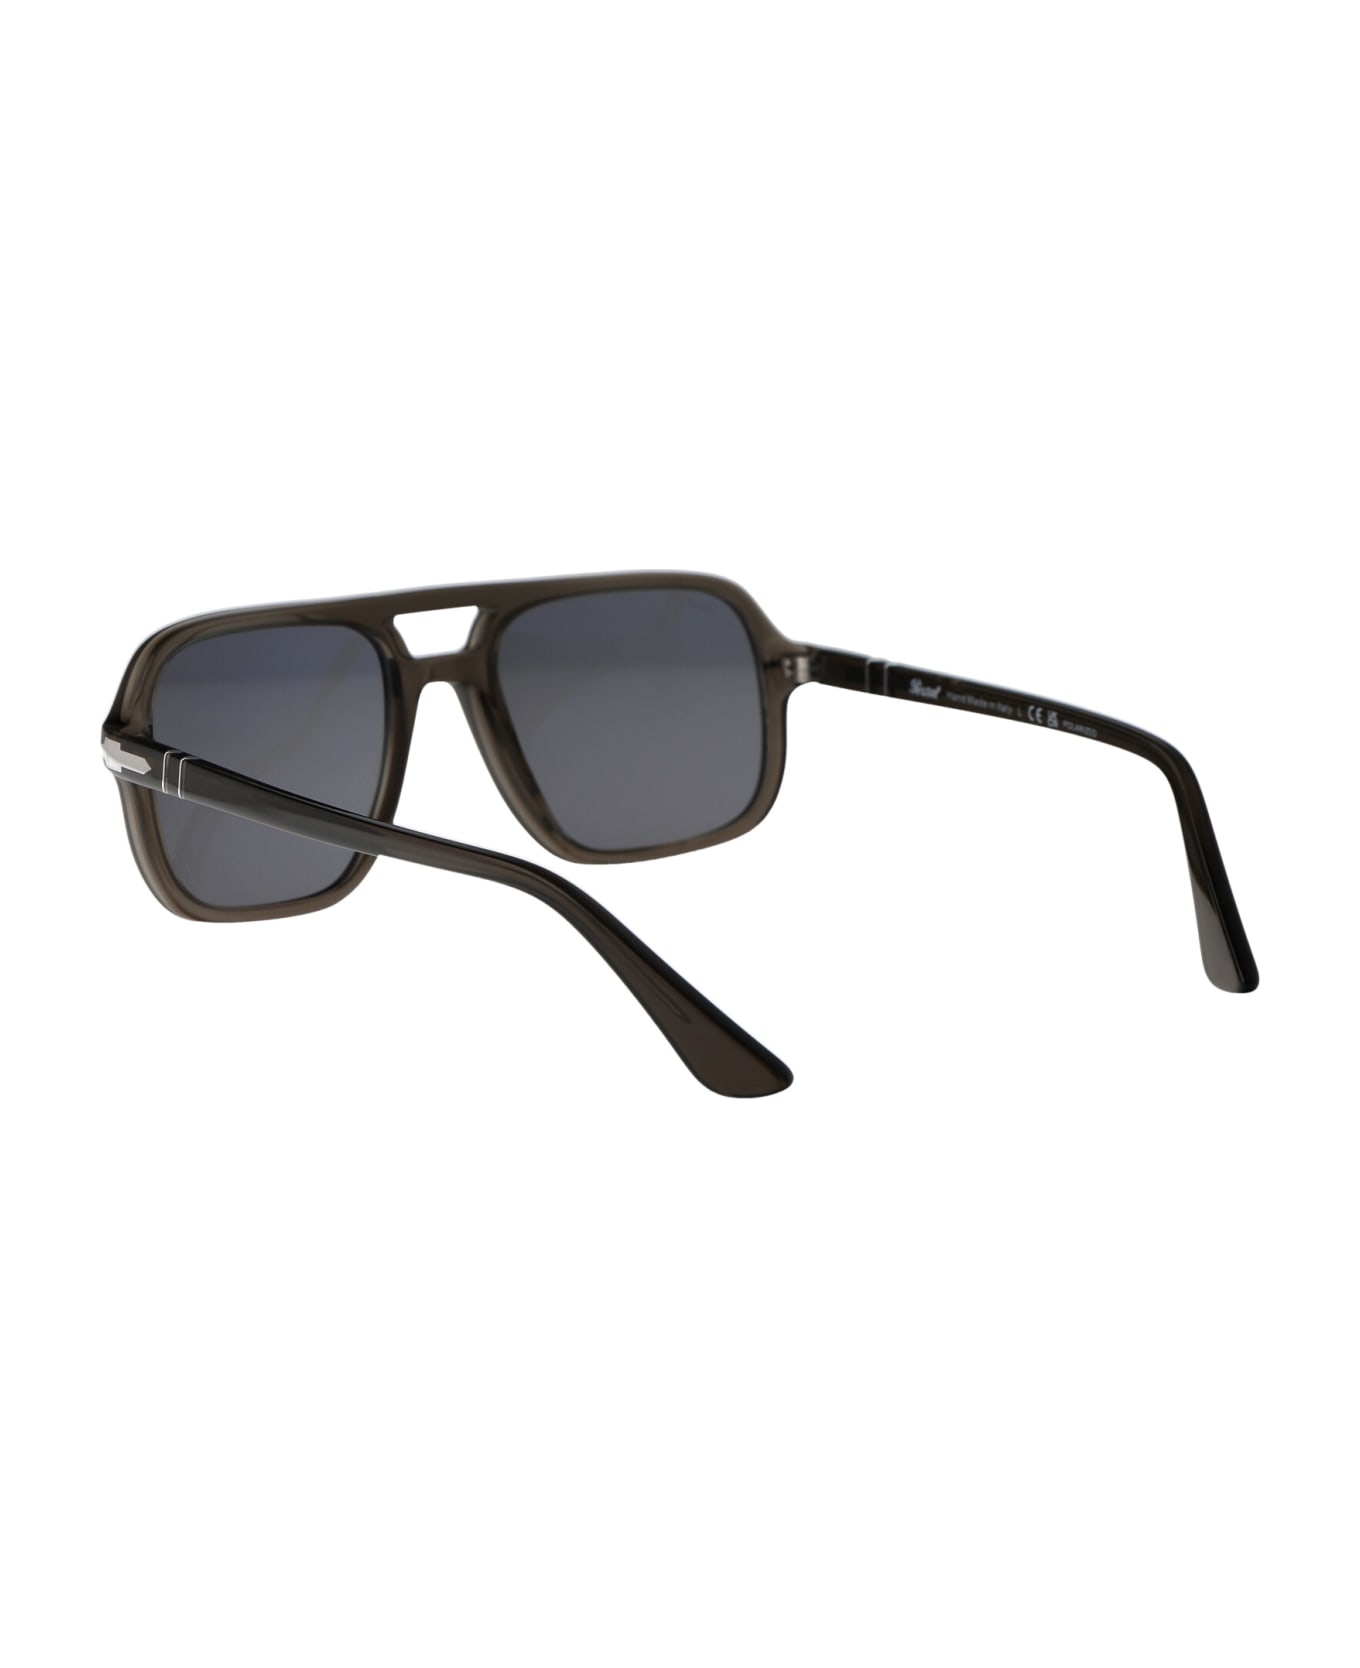 Persol 0po3328s Sunglasses - 110348 Smoke